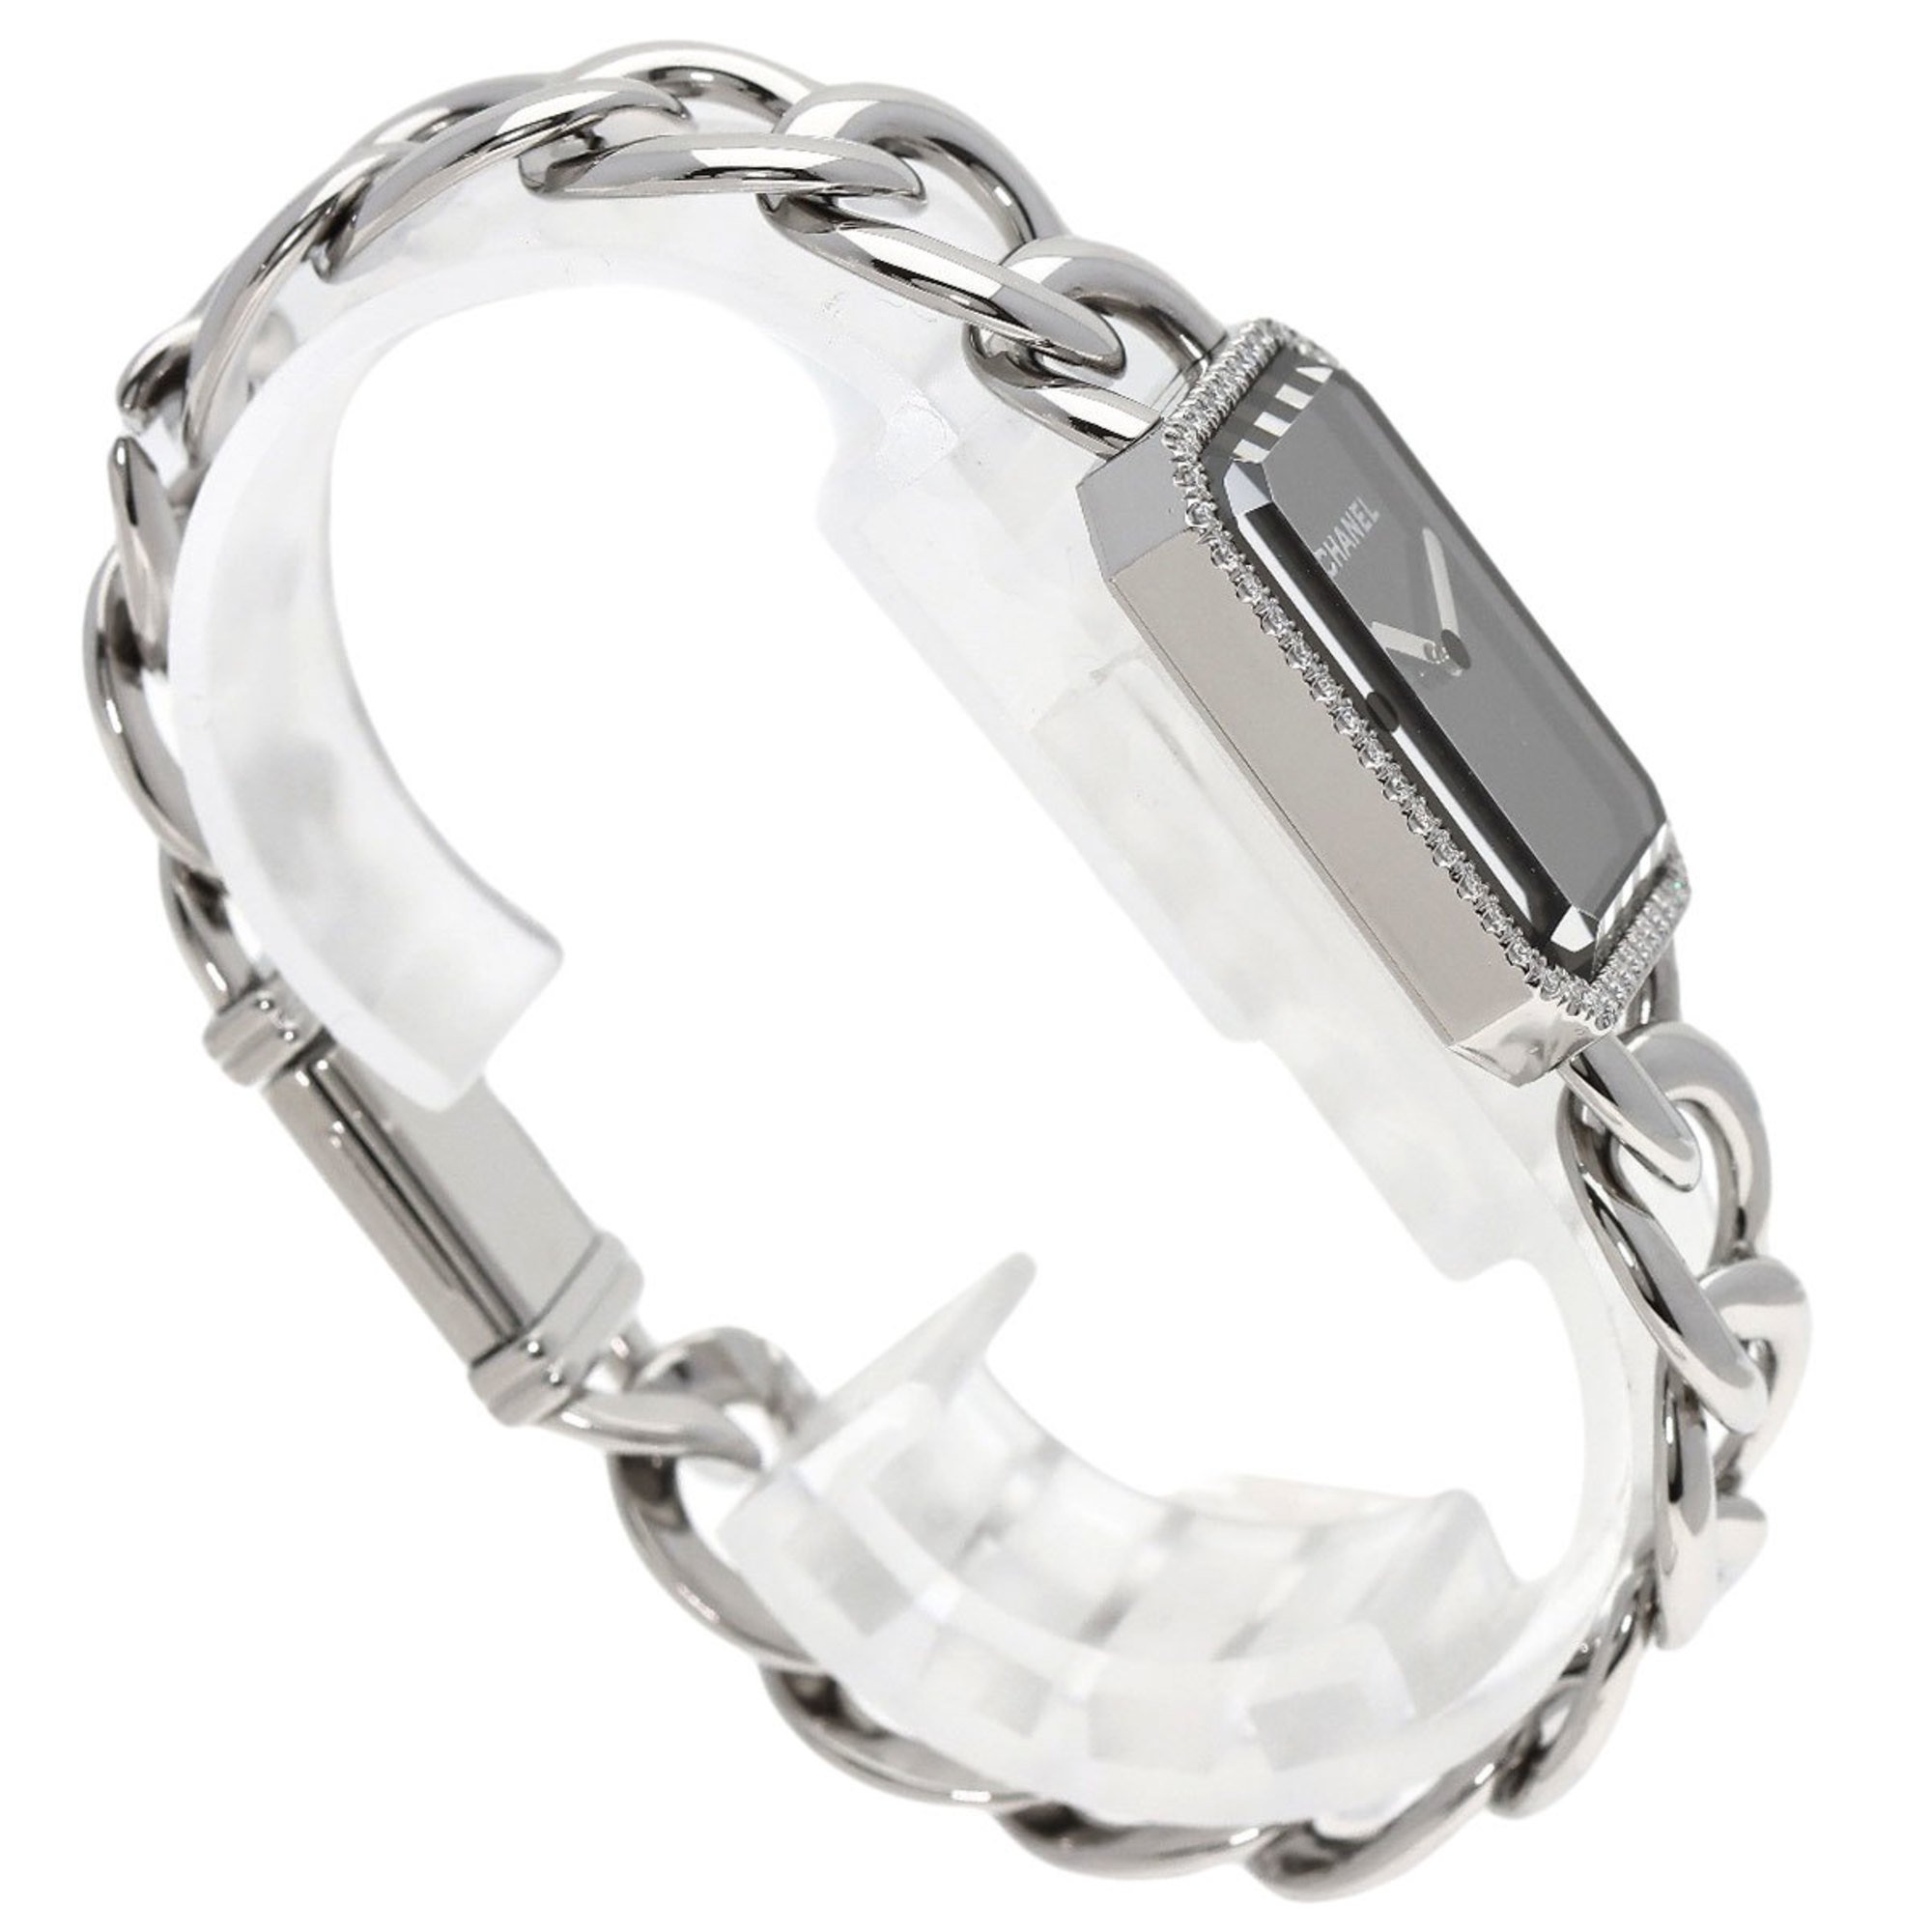 Chanel H3254 Premiere Diamond Bezel Watch Stainless Steel/SS/Diamond Women's CHANEL